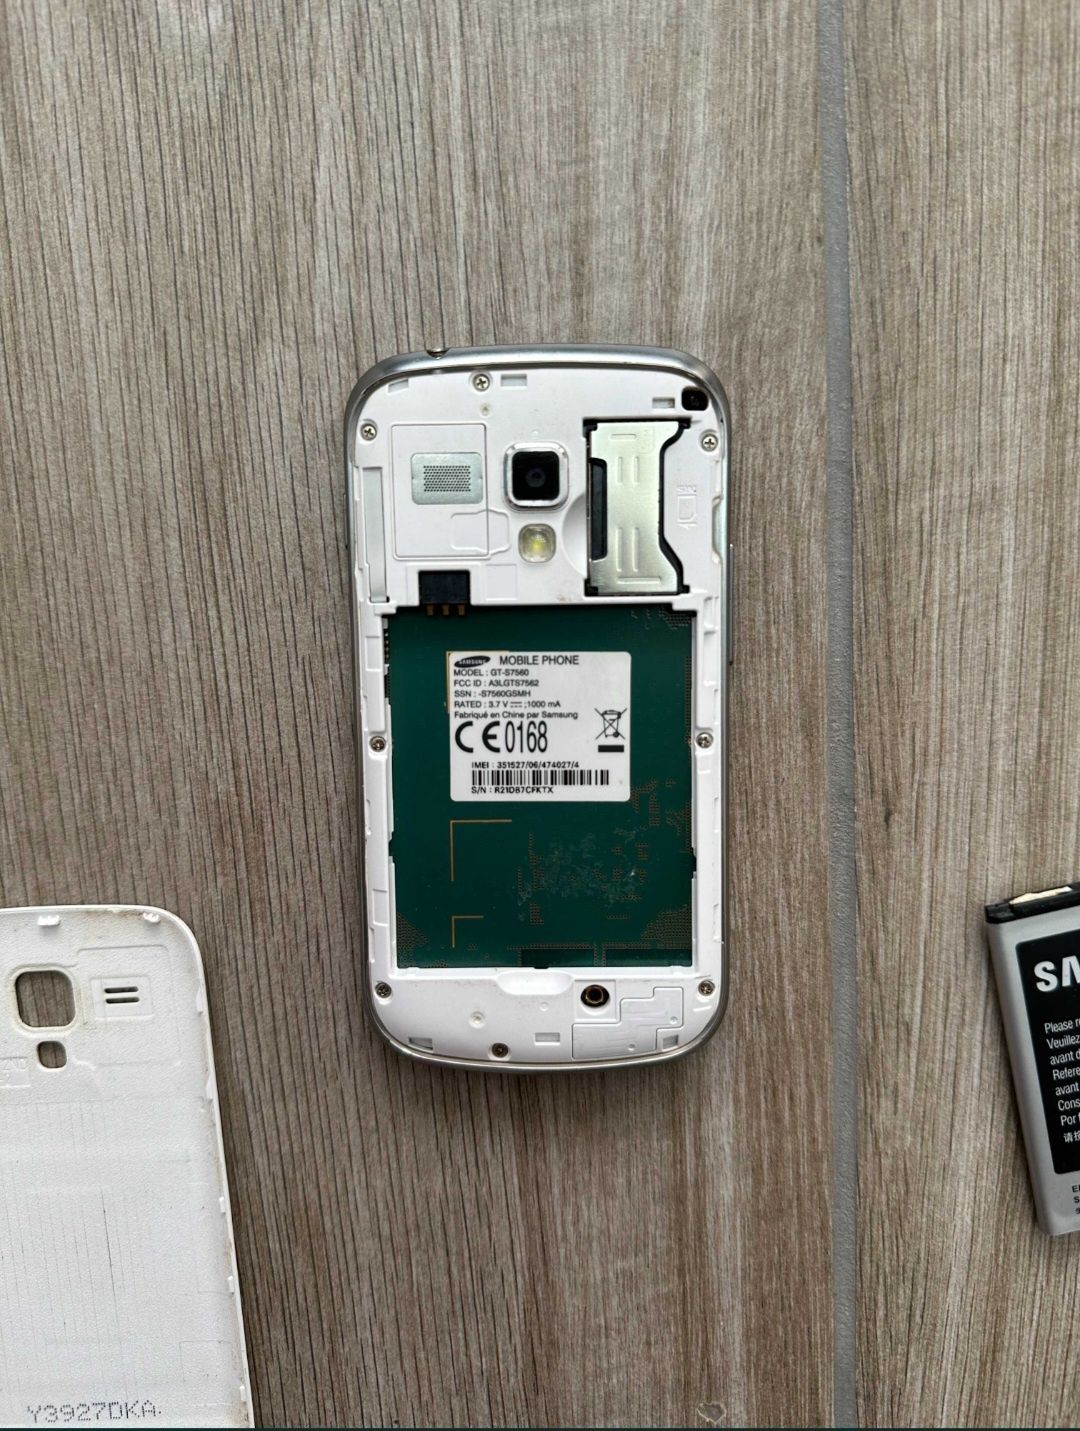 Samsung GT-S7560, Functional
Telefonul este functional, bateria nu mai